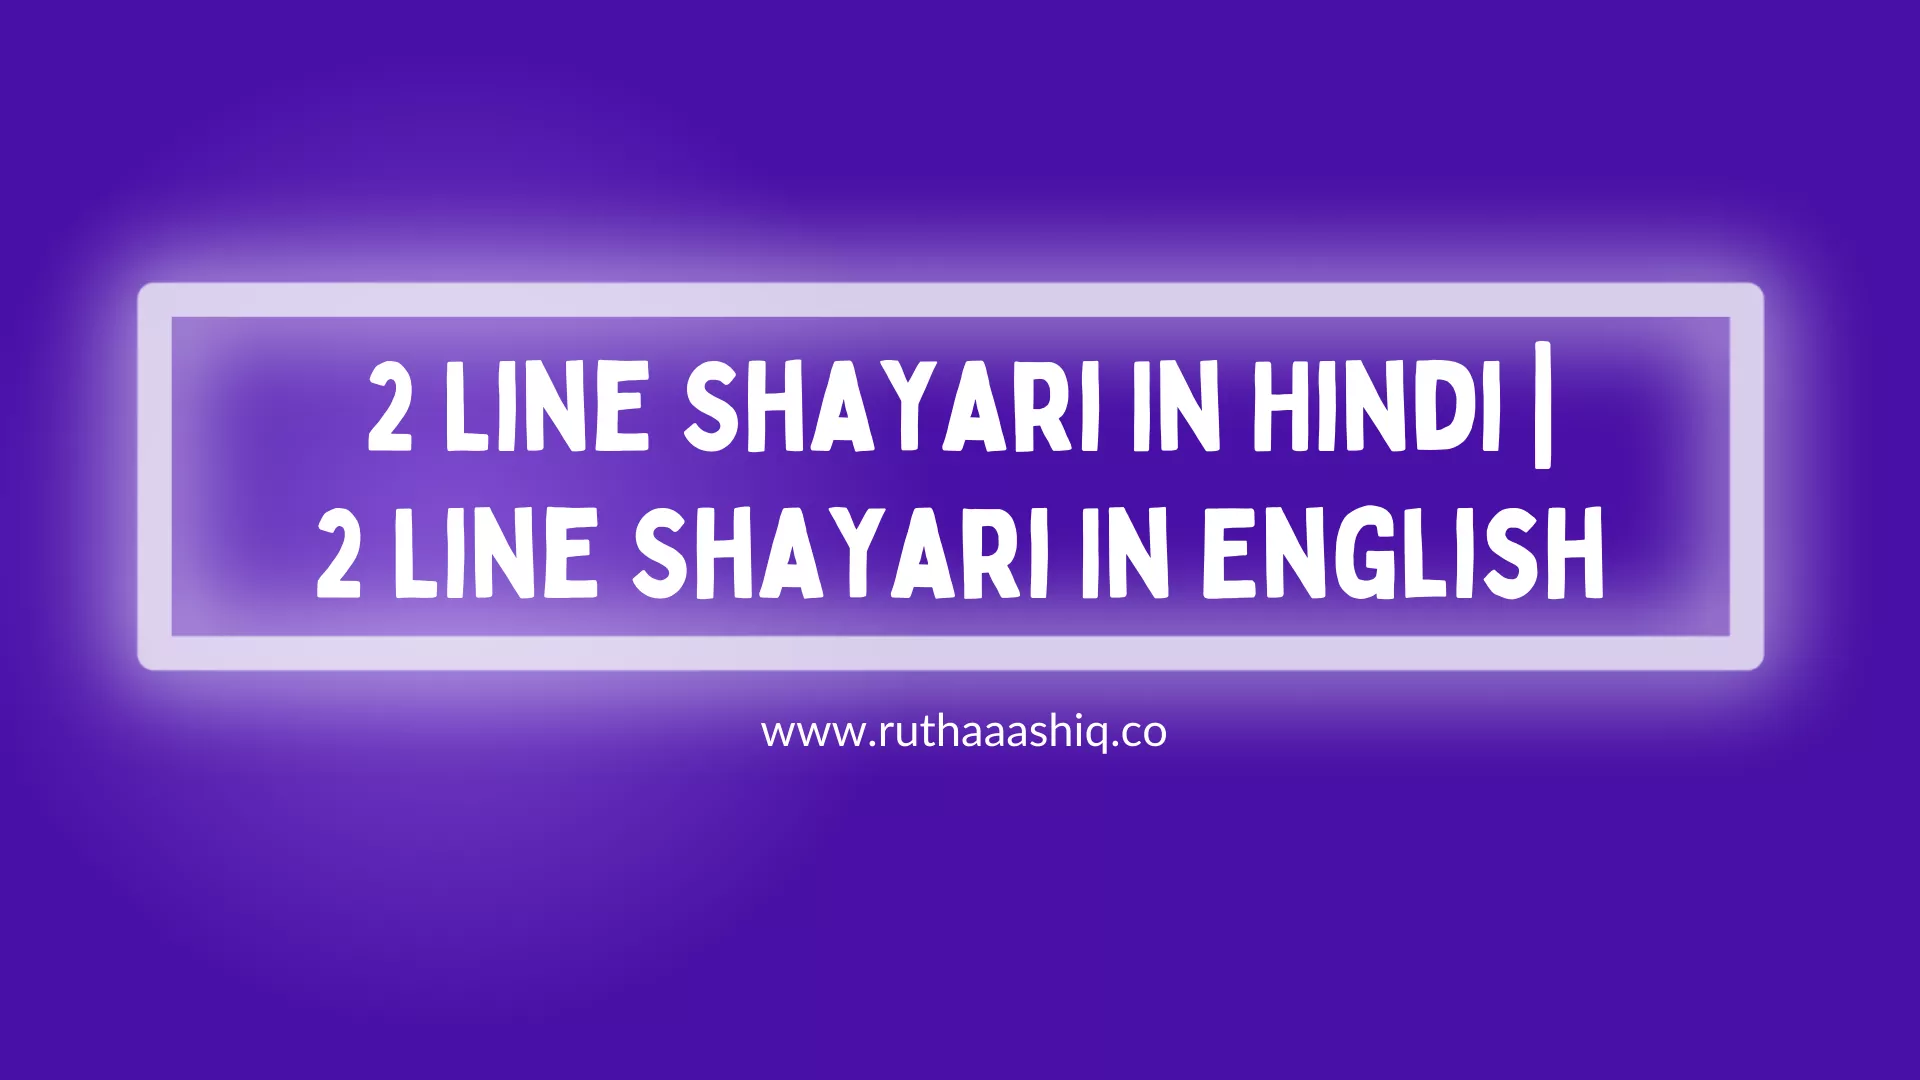 2 Line Shayari In Hindi 2 Line Shayari In English